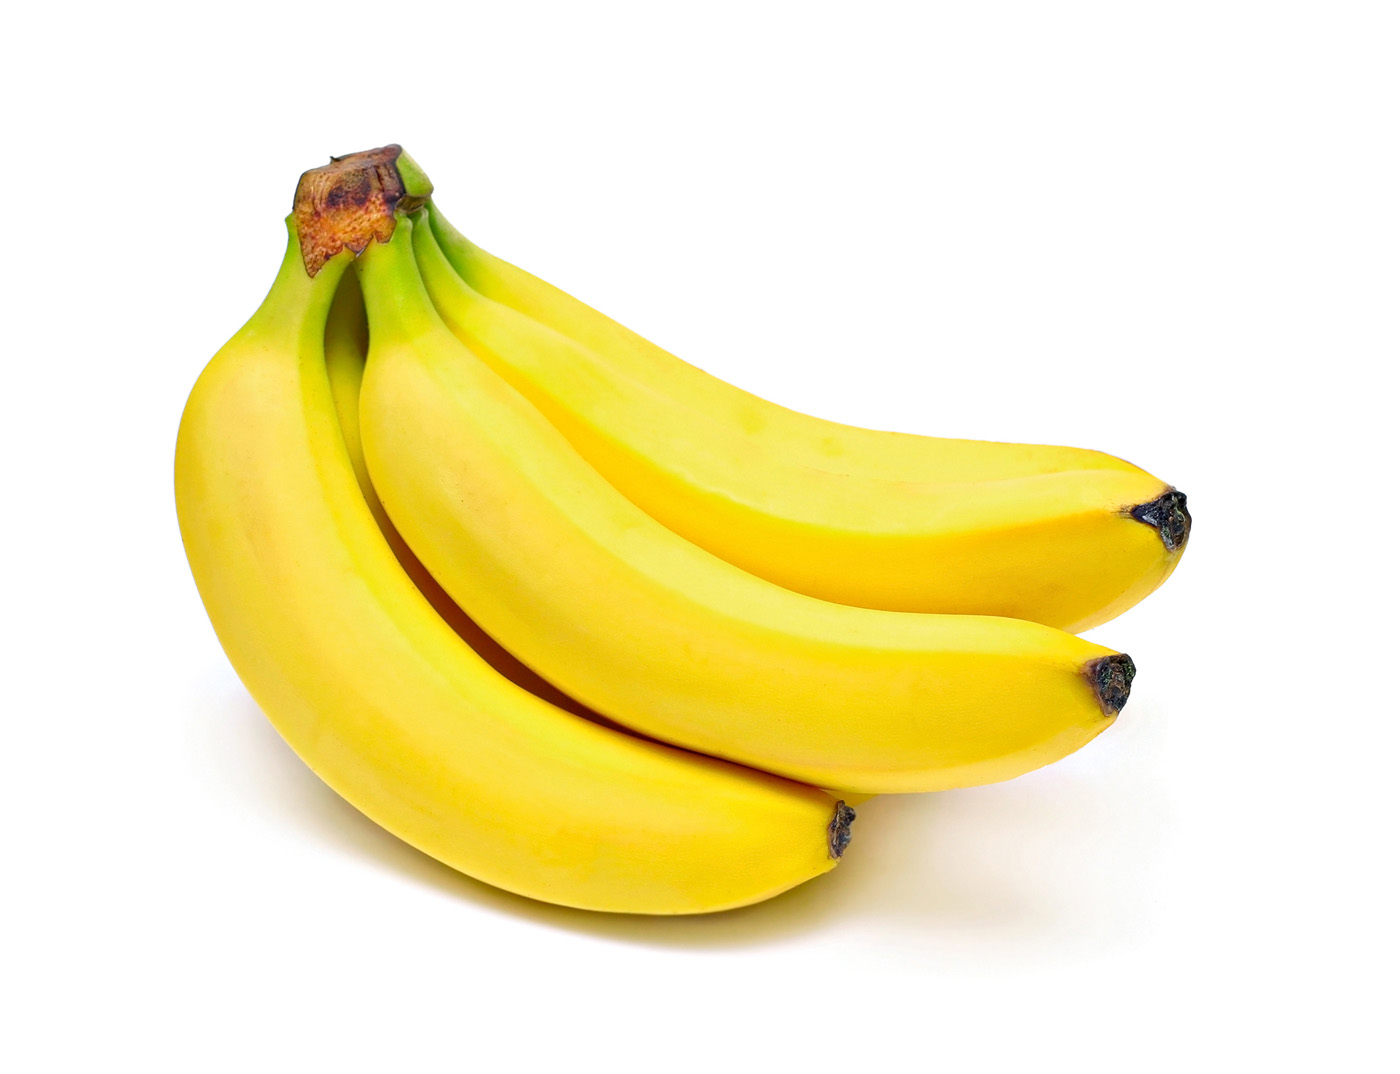 香蕉的营养价值高 怎么放不变黑?【图】 - 中国